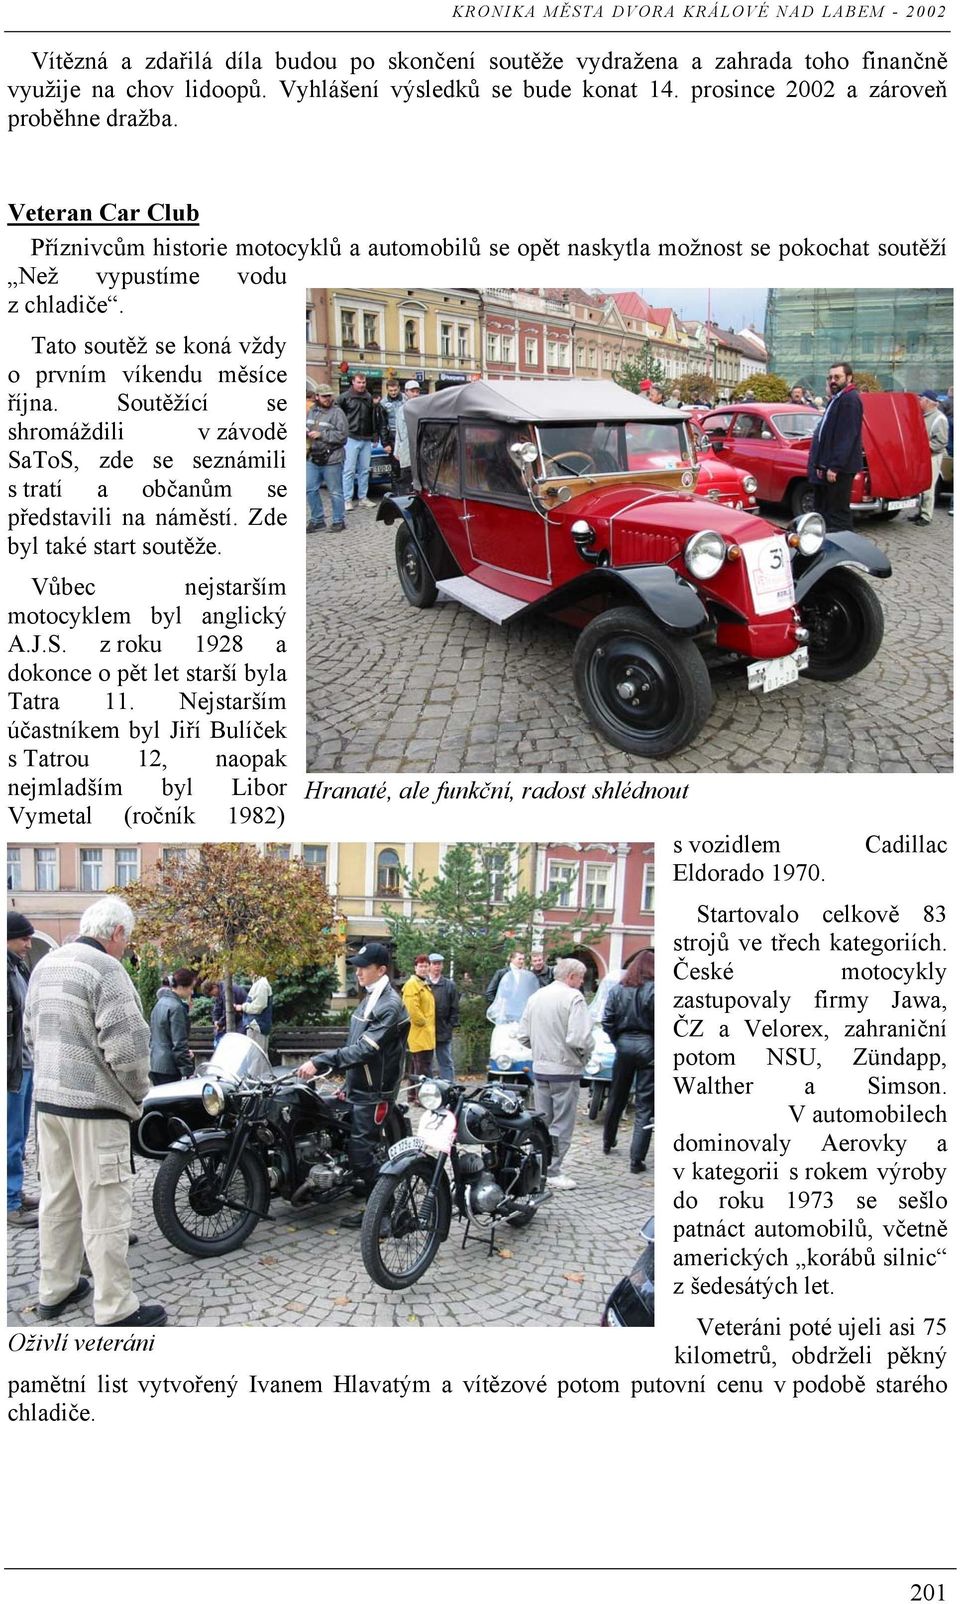 Soutěžící se shromáždili v závodě SaToS, zde se seznámili s tratí a občanům se představili na náměstí. Zde byl také start soutěže. Vůbec nejstarším motocyklem byl anglický A.J.S. z roku 1928 a dokonce o pět let starší byla Tatra 11.